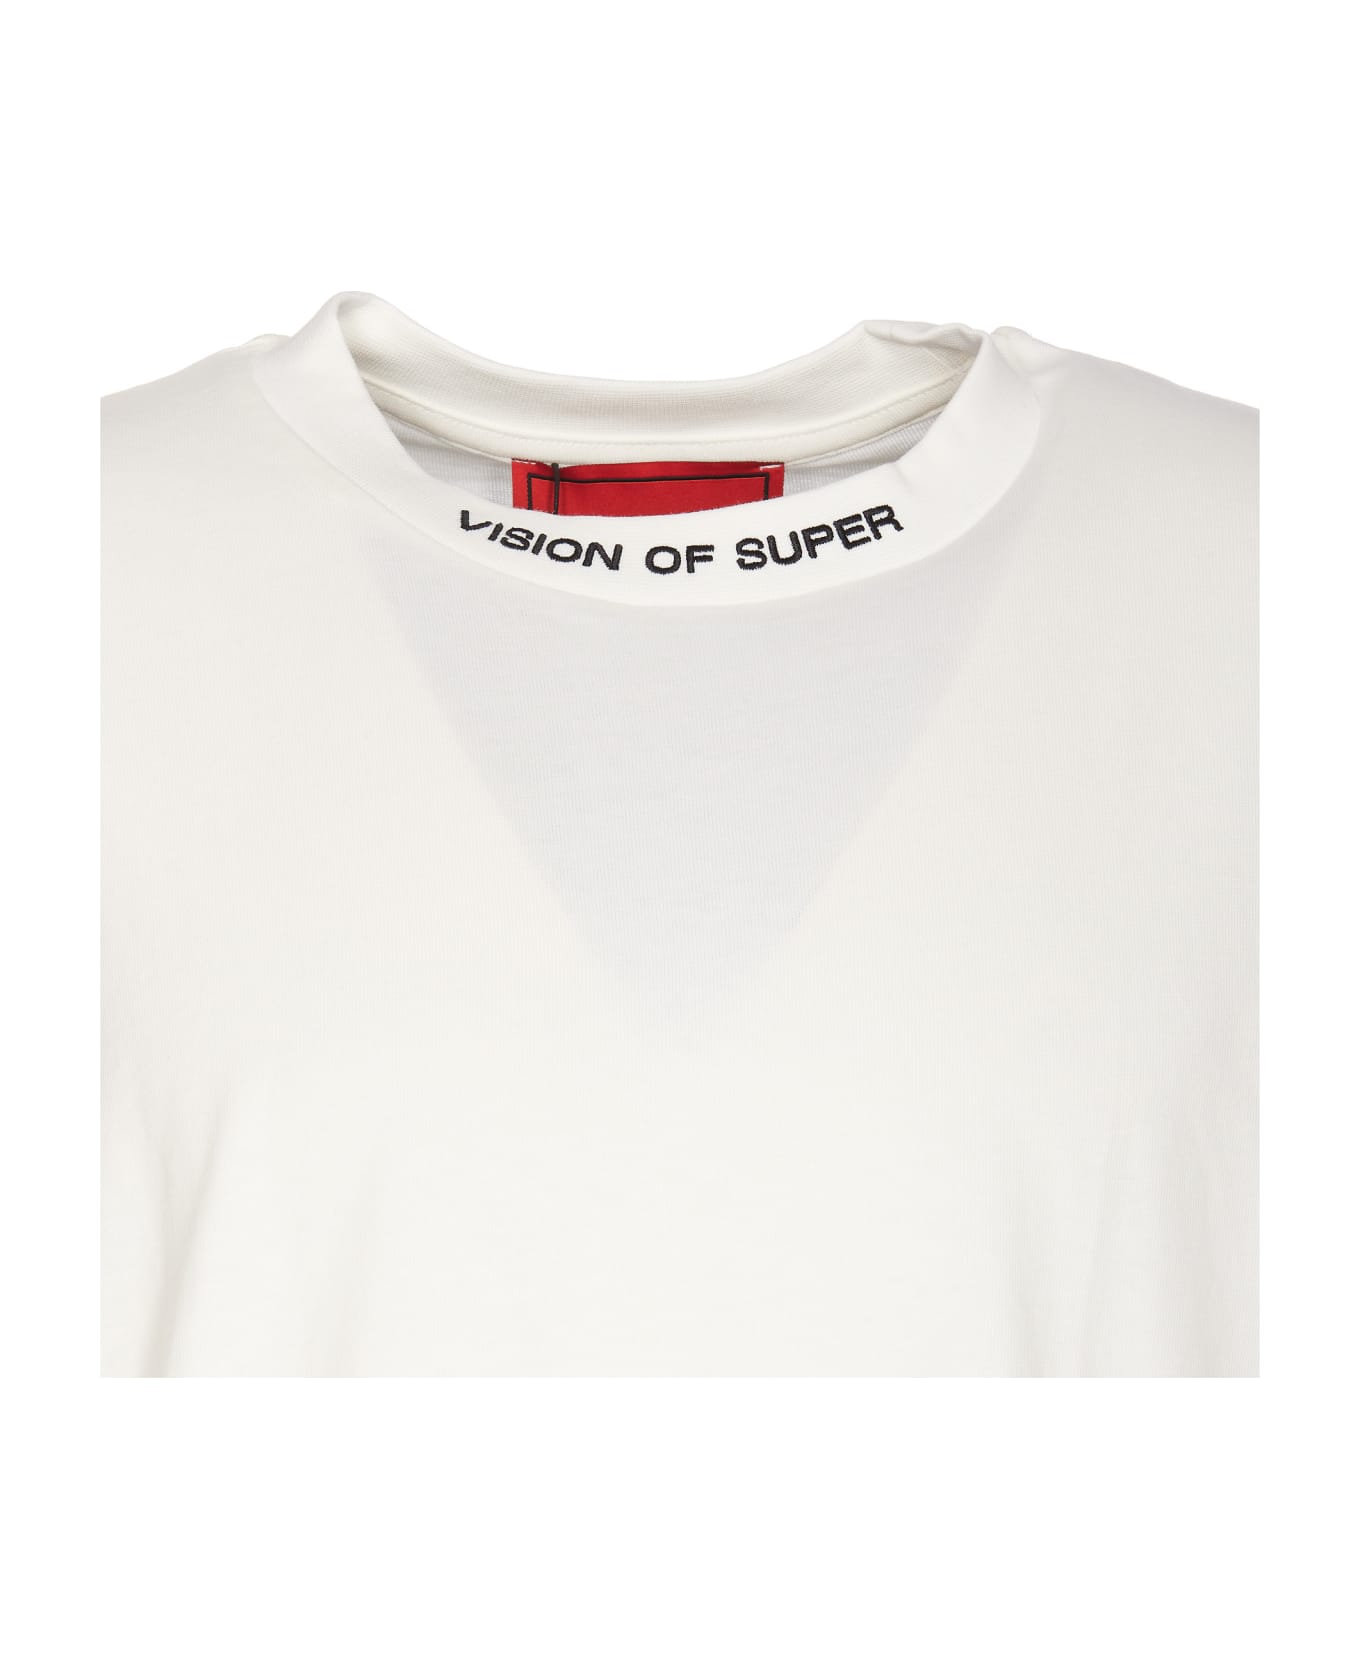 Vision of Super Logo T-shirt - White シャツ